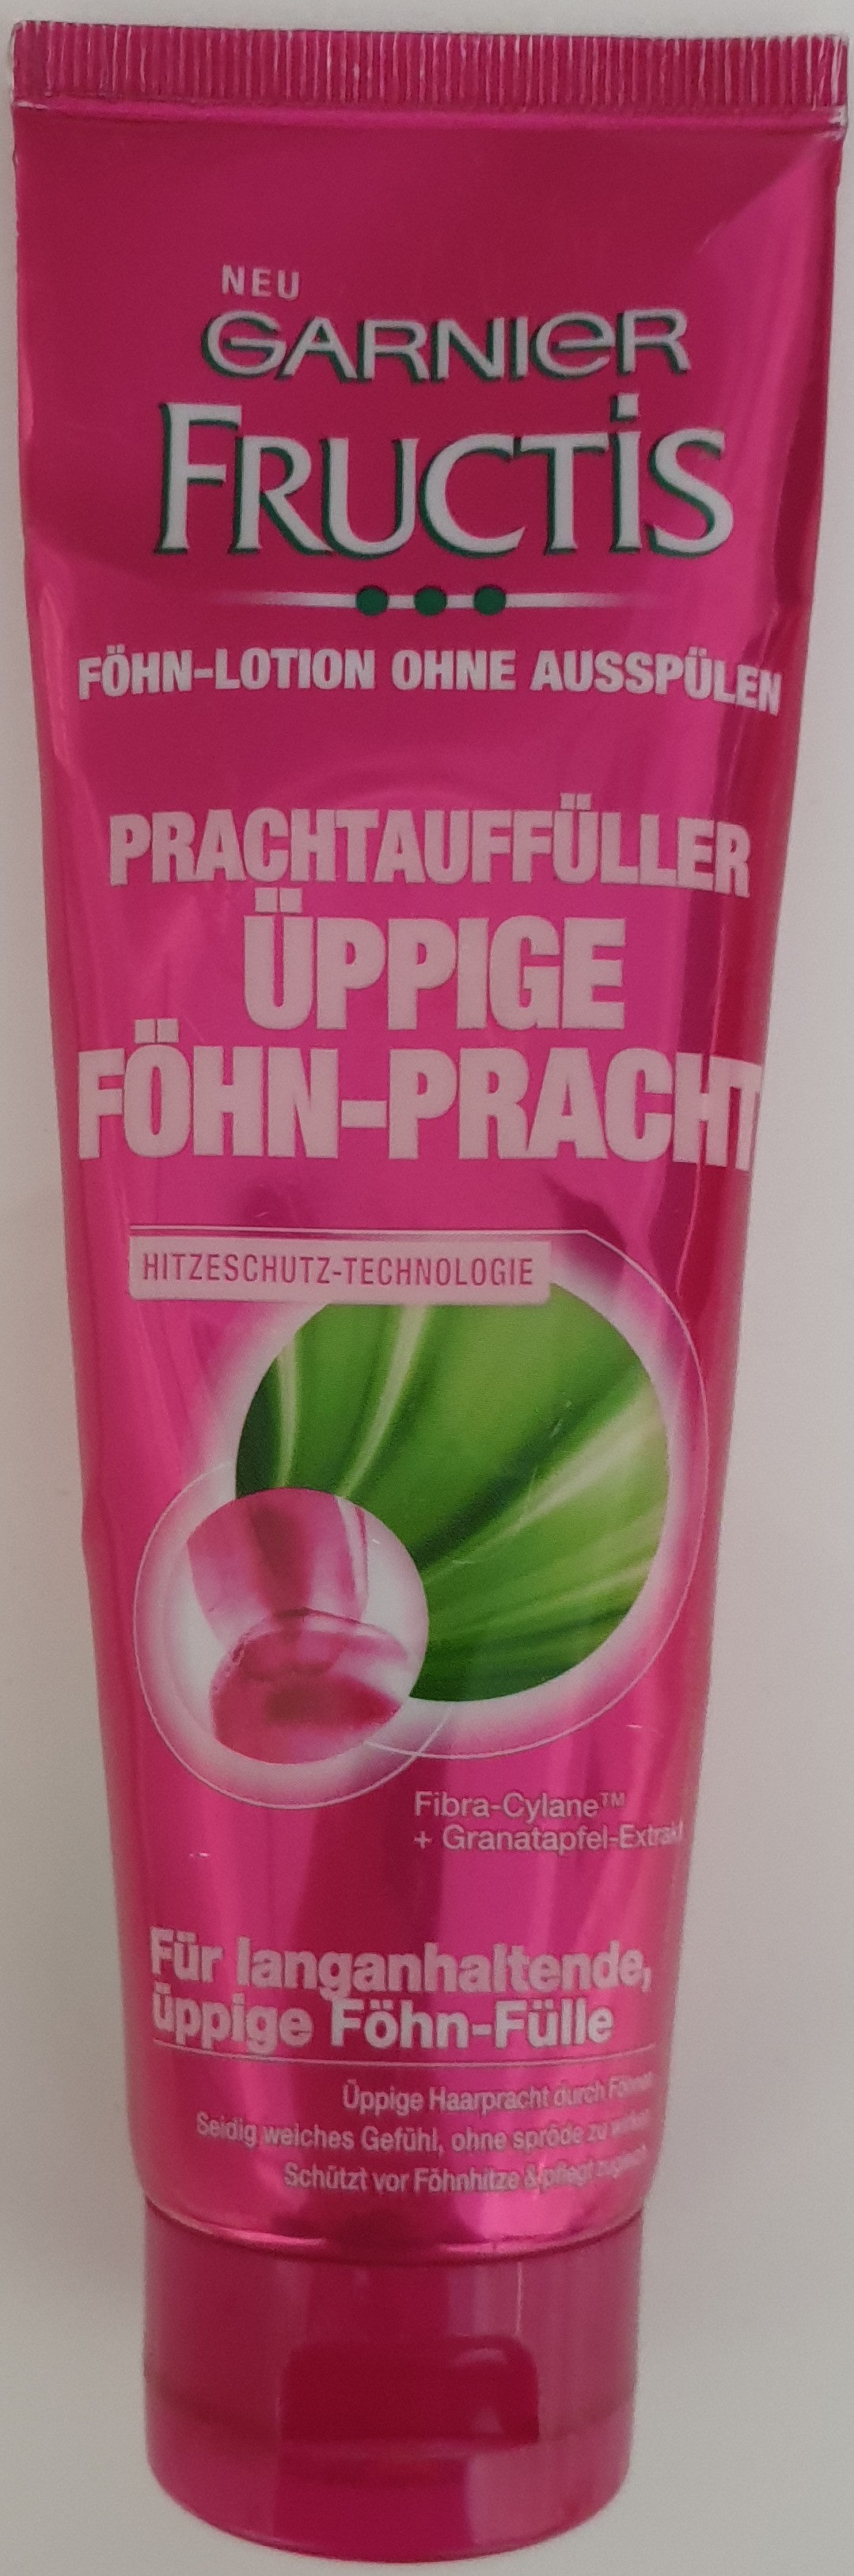 Fructis Prachtauffüller Föhn-Pracht - 製品 - de